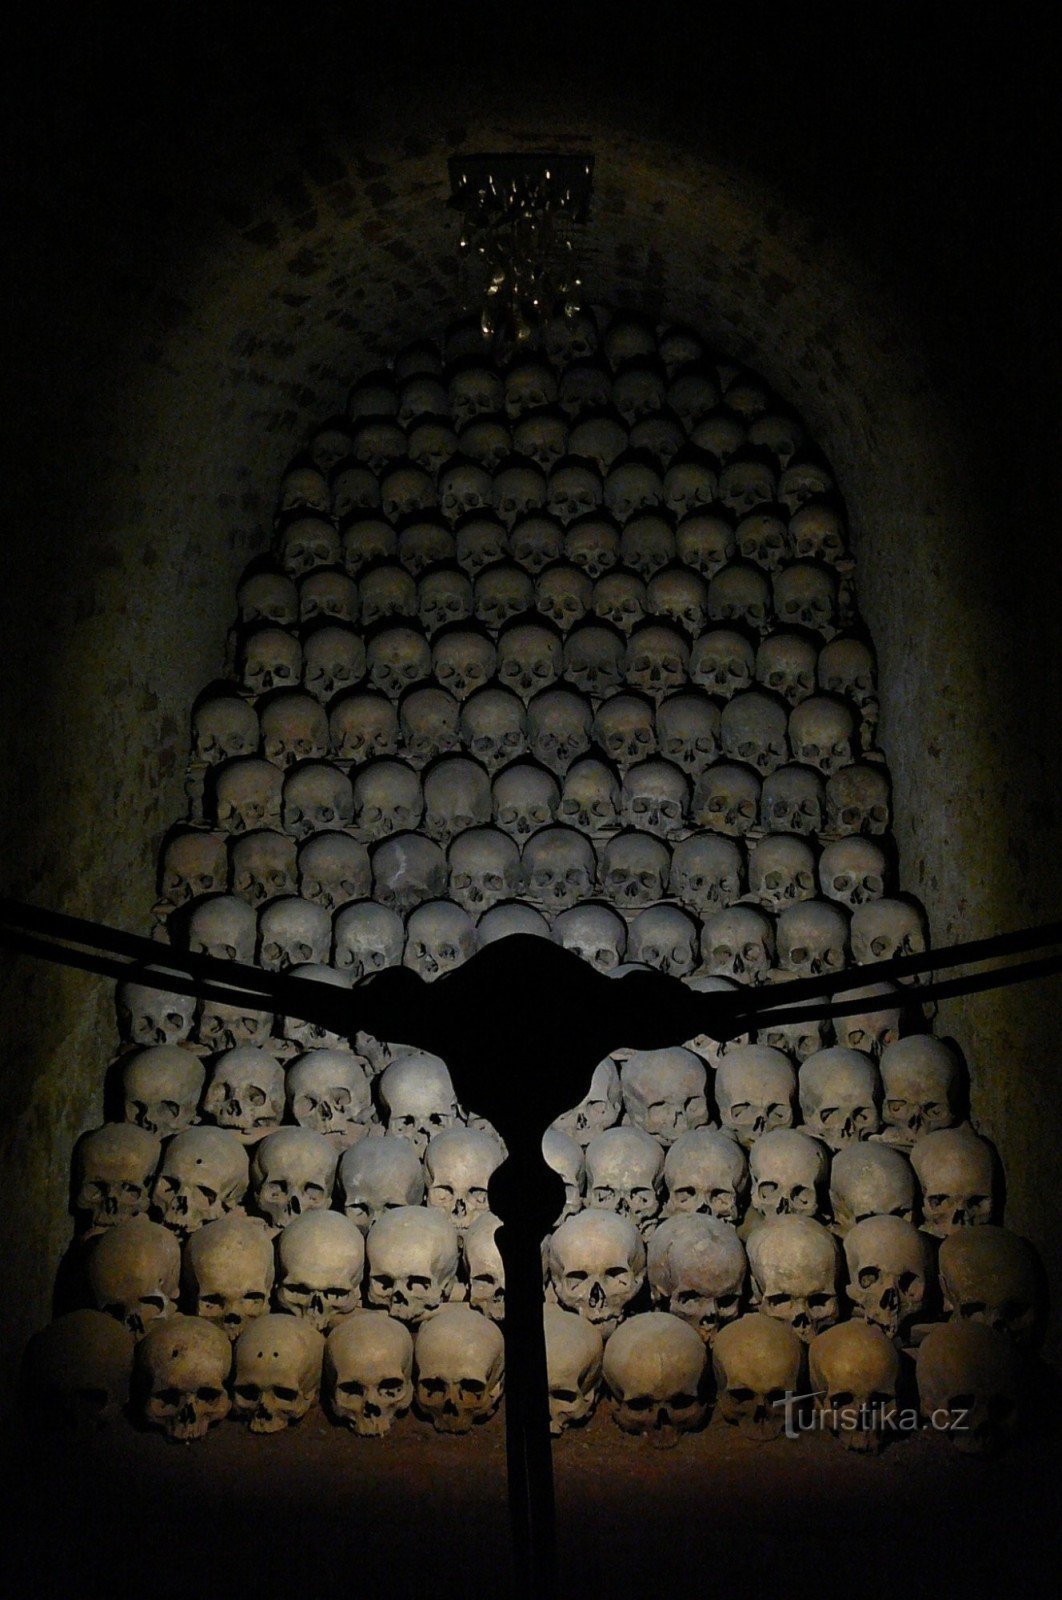 La partie la plus impressionnante de l'ossuaire avec la sculpture Tears de Jaromír Gargulák (près du plafond)